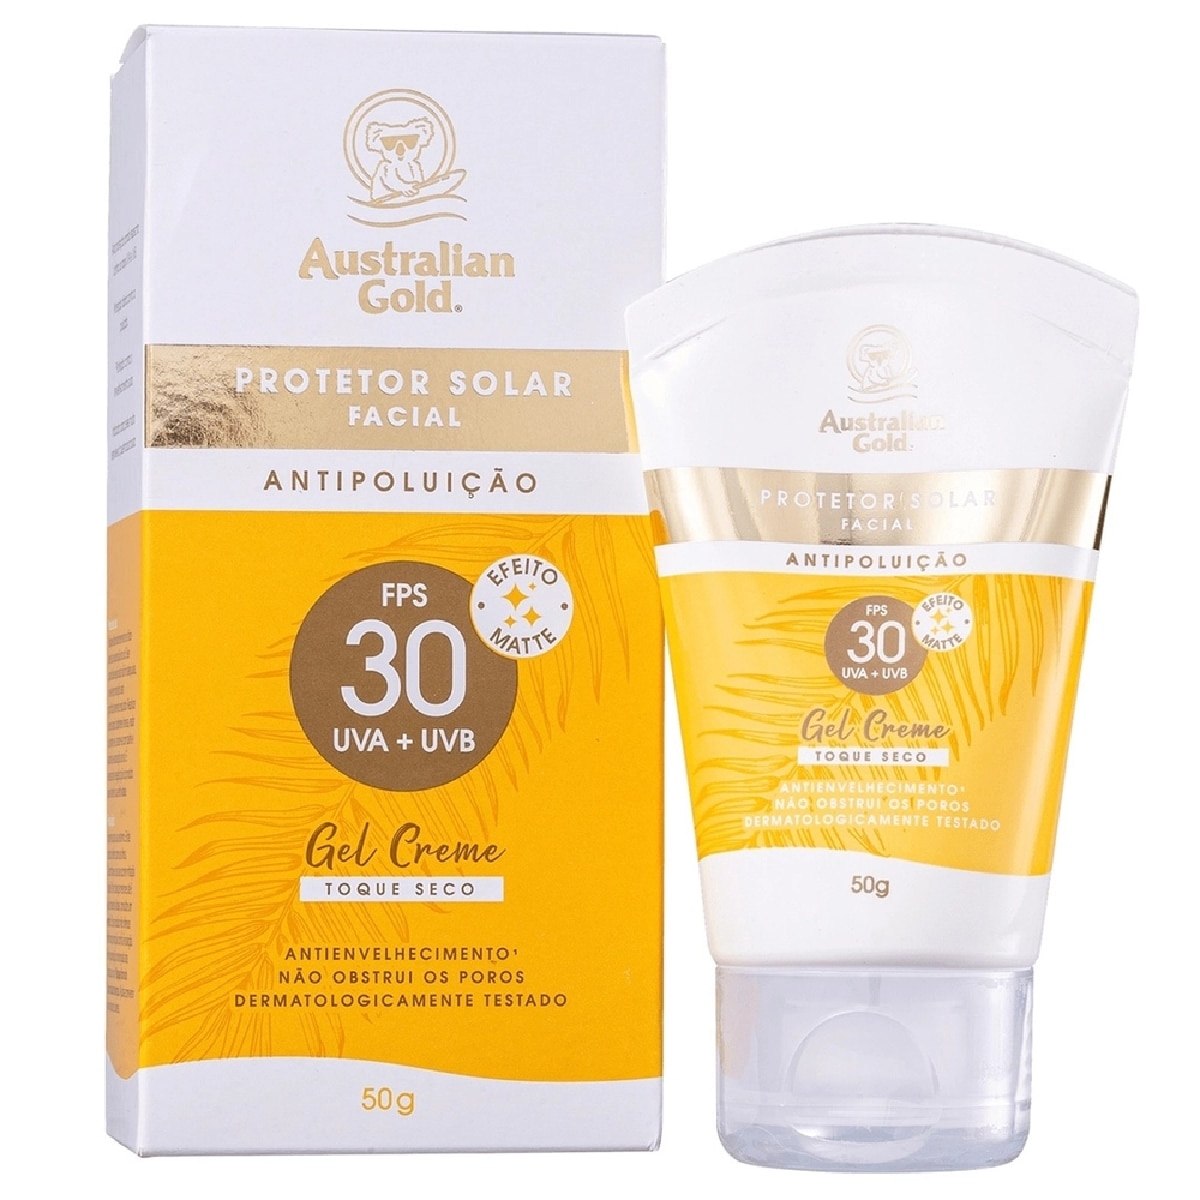 Protetor Solar Facial Australian Gold FPS30 Antipoluicao Gel Creme 50g